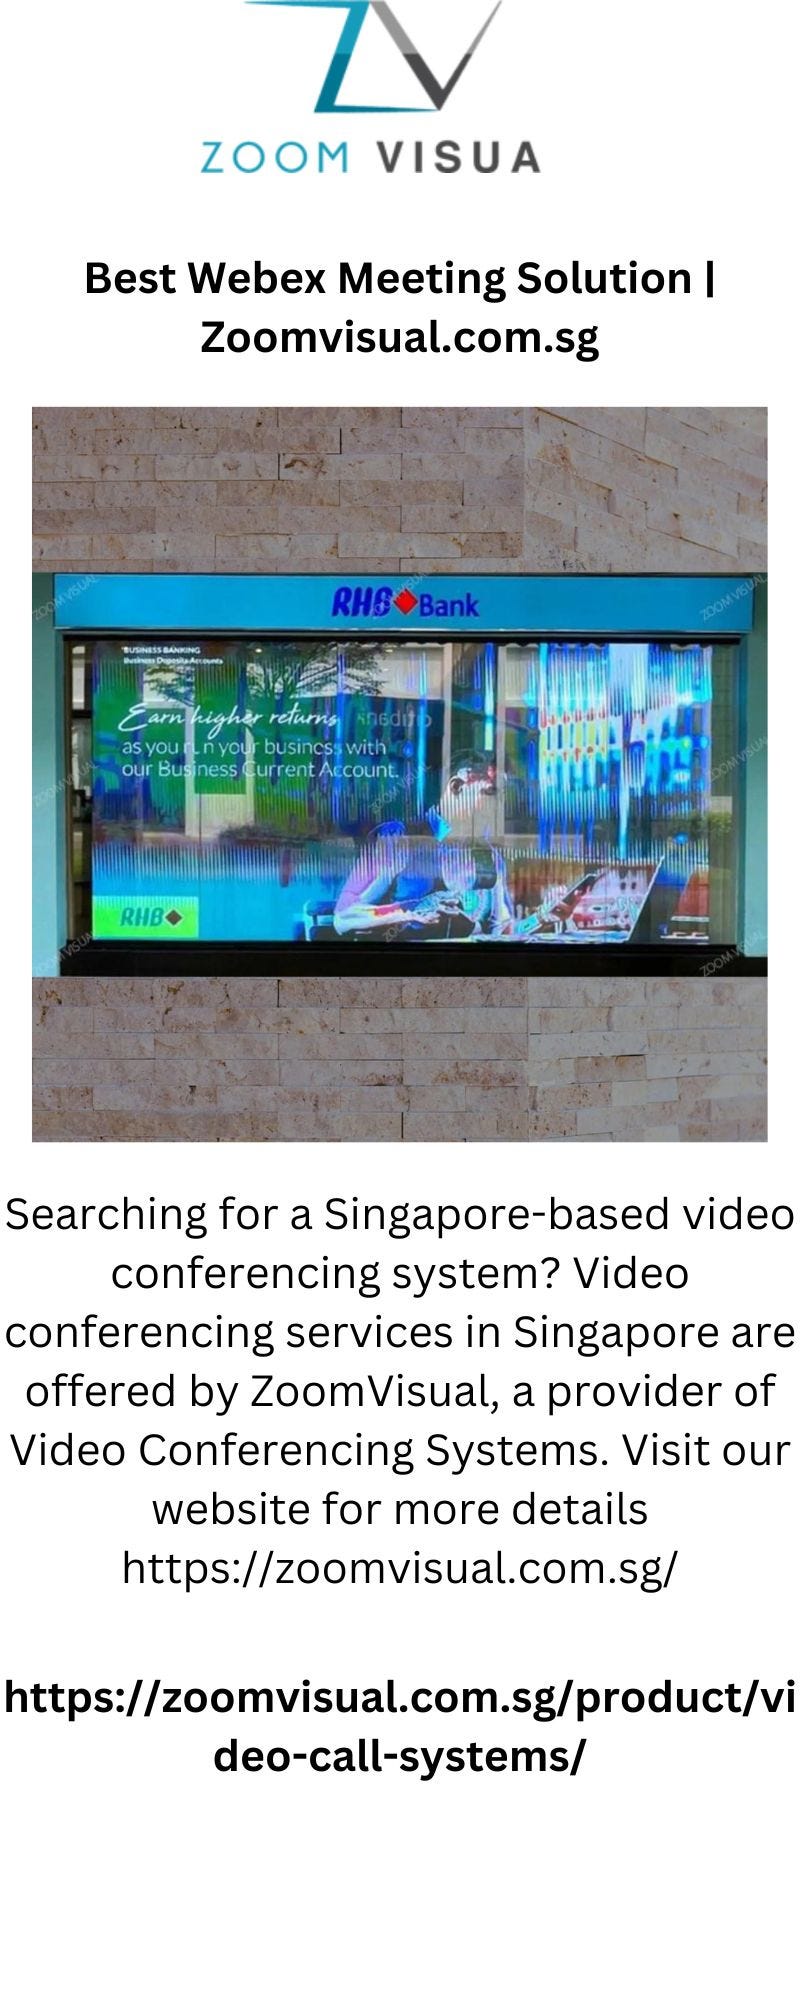 Logitech Singapore, Logitech Video Conferencing